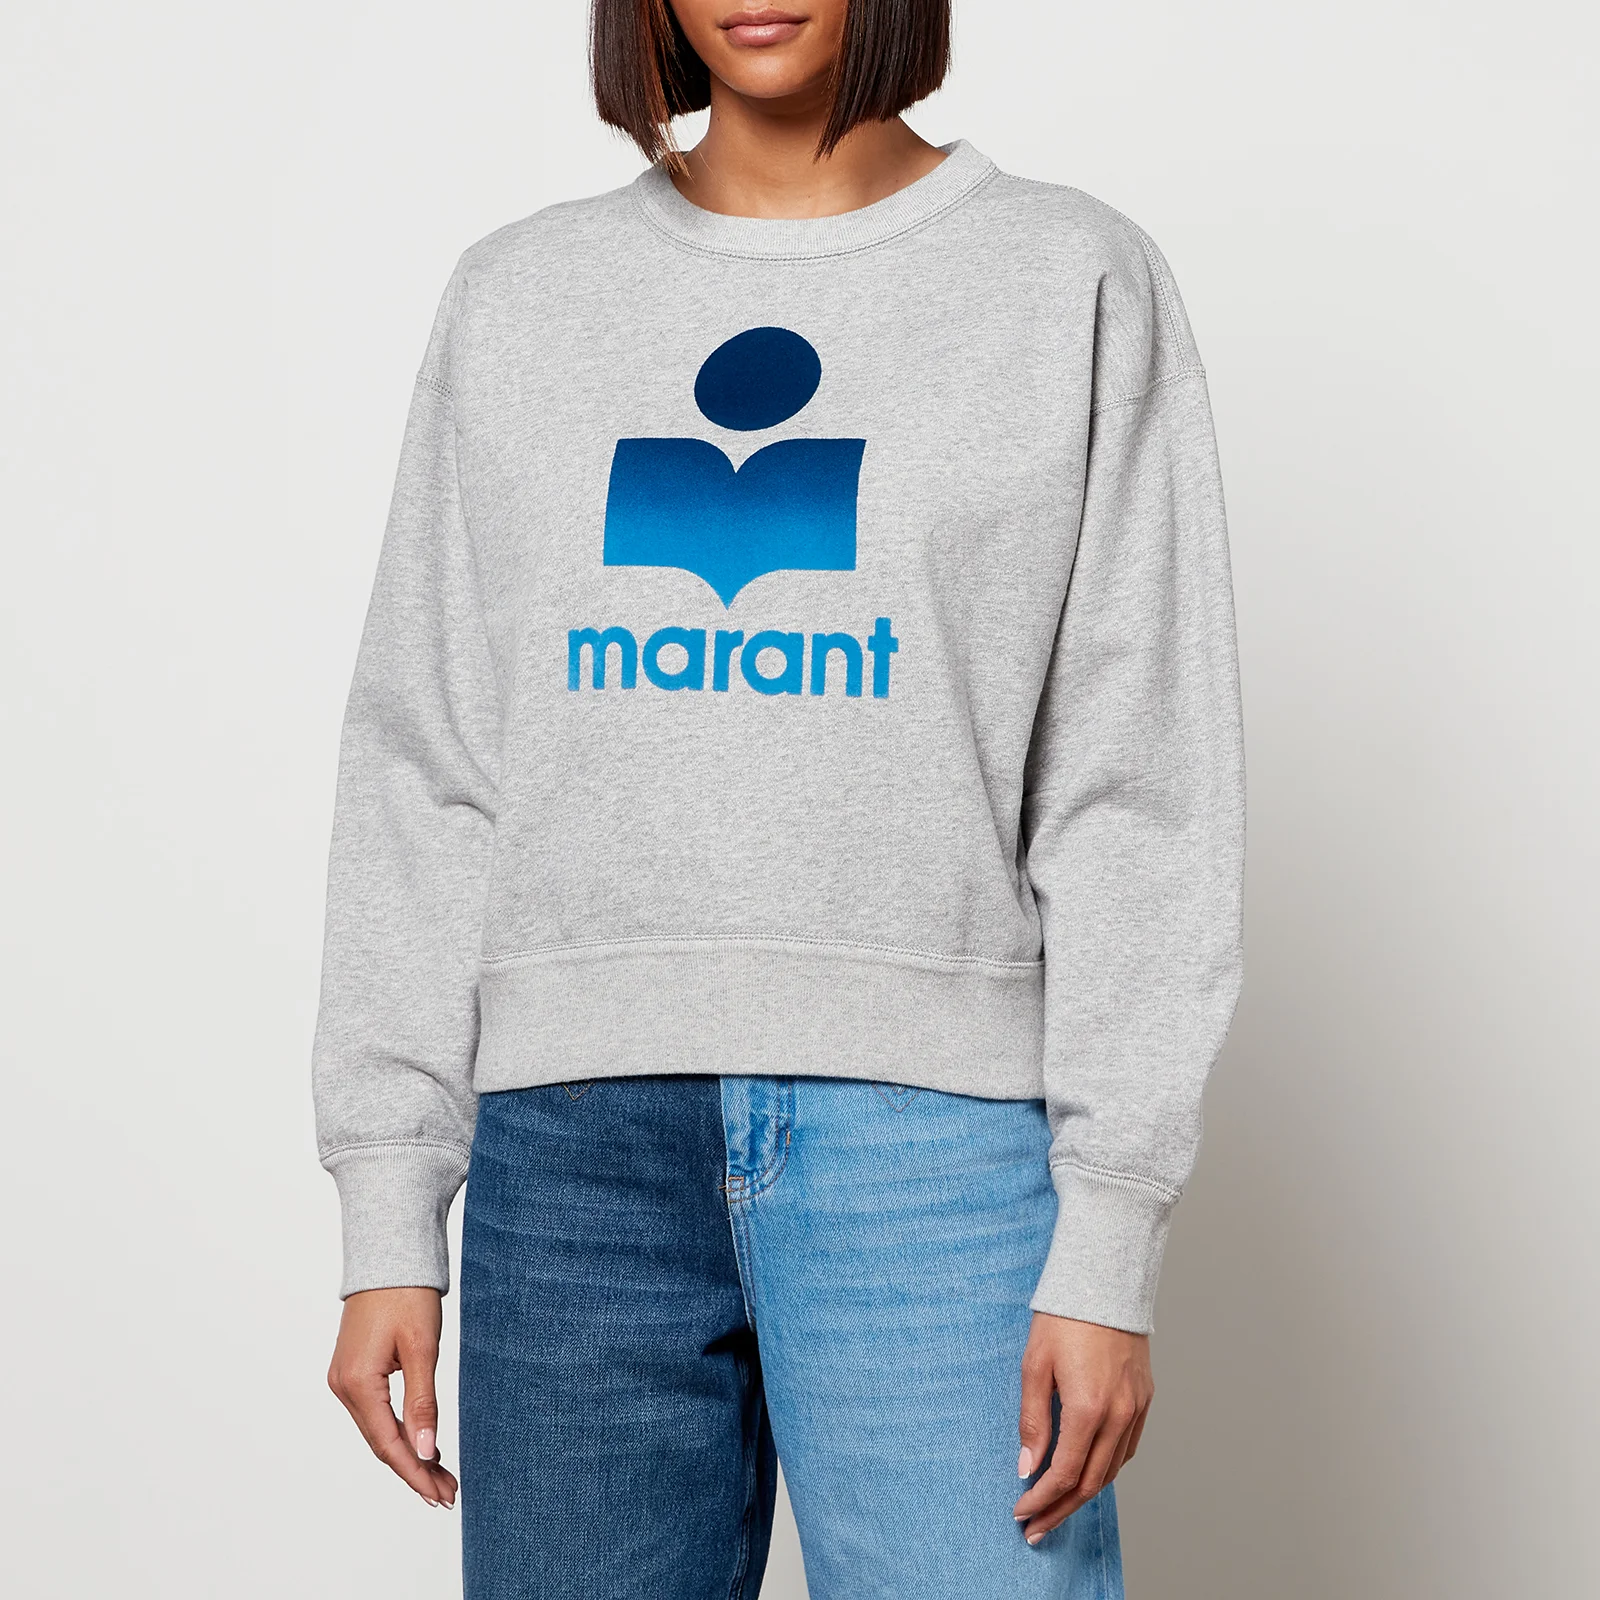 Marant Étoile Women's Mobyli Sweatshirt - Grey Image 1